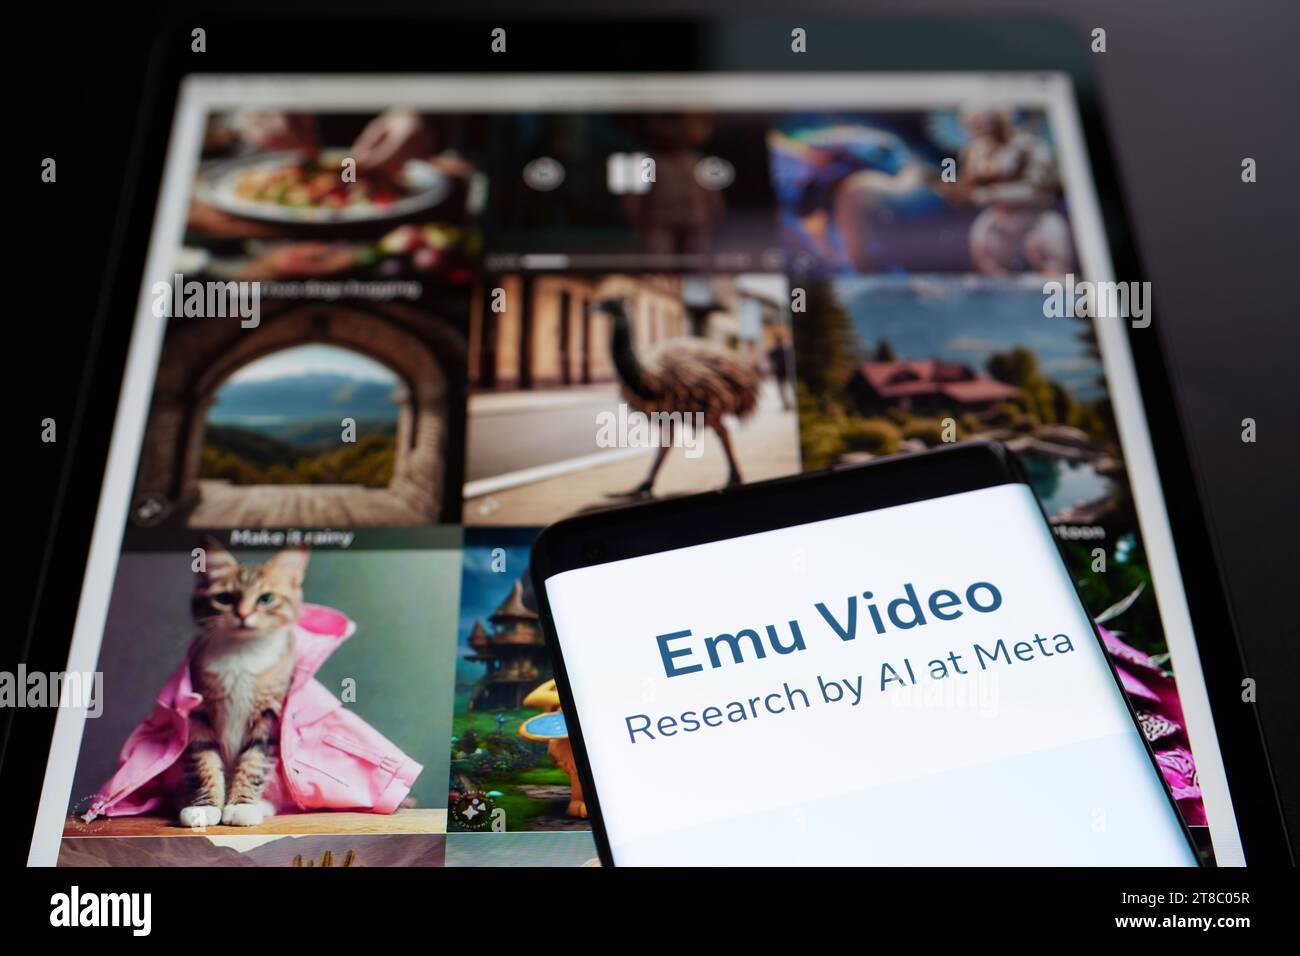 Logo de l'outil EMU Edit et EMU Video vu sur smartphone et ses exemples en arrière-plan. Nouvel outil de génération et d'édition d'images et de vidéos ai de Meta. Banque D'Images